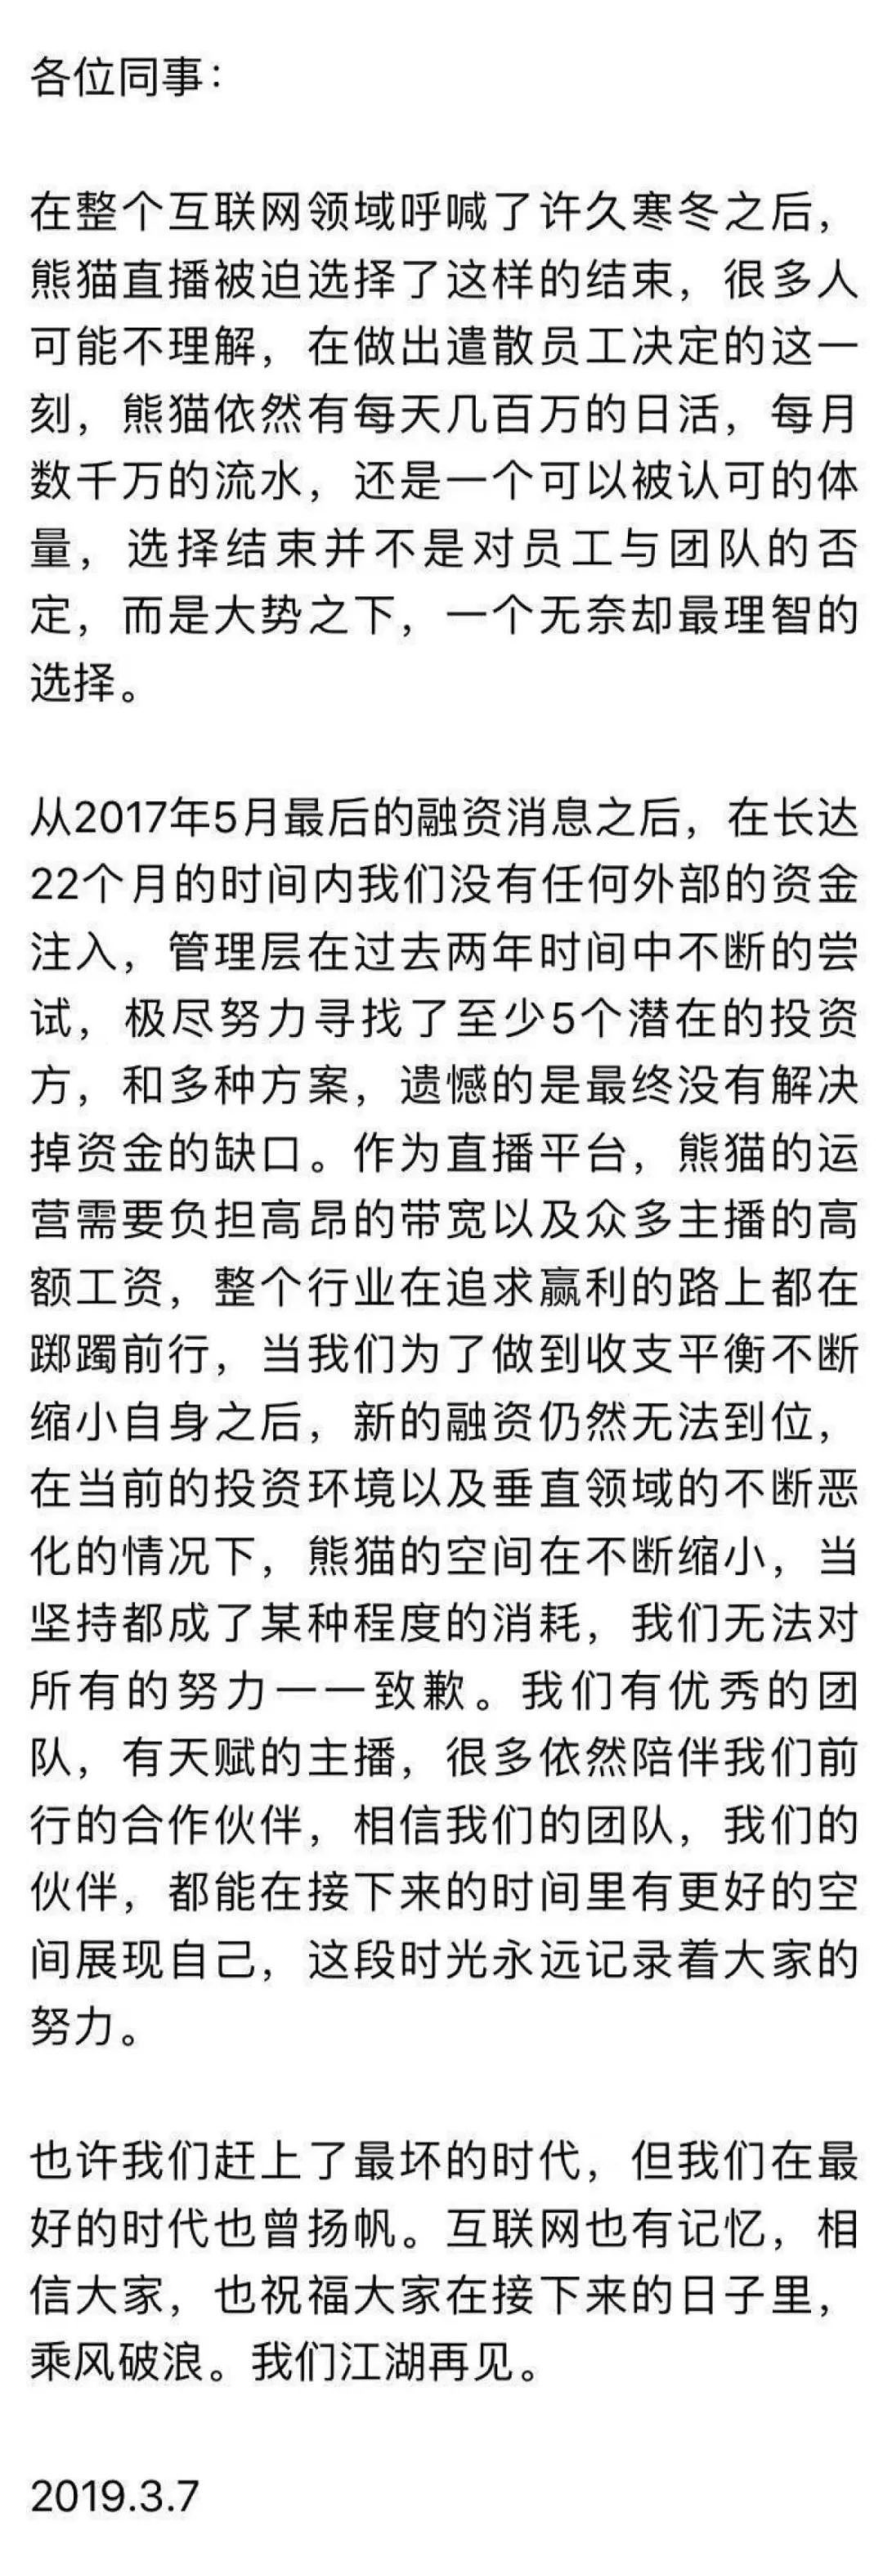 8点1氪：联想：杨元庆“高通5G强于华为”一文系造谣；熊猫直播宣布结束；BOSS直聘报告：去年中国女性薪酬不及男性8成 - 6